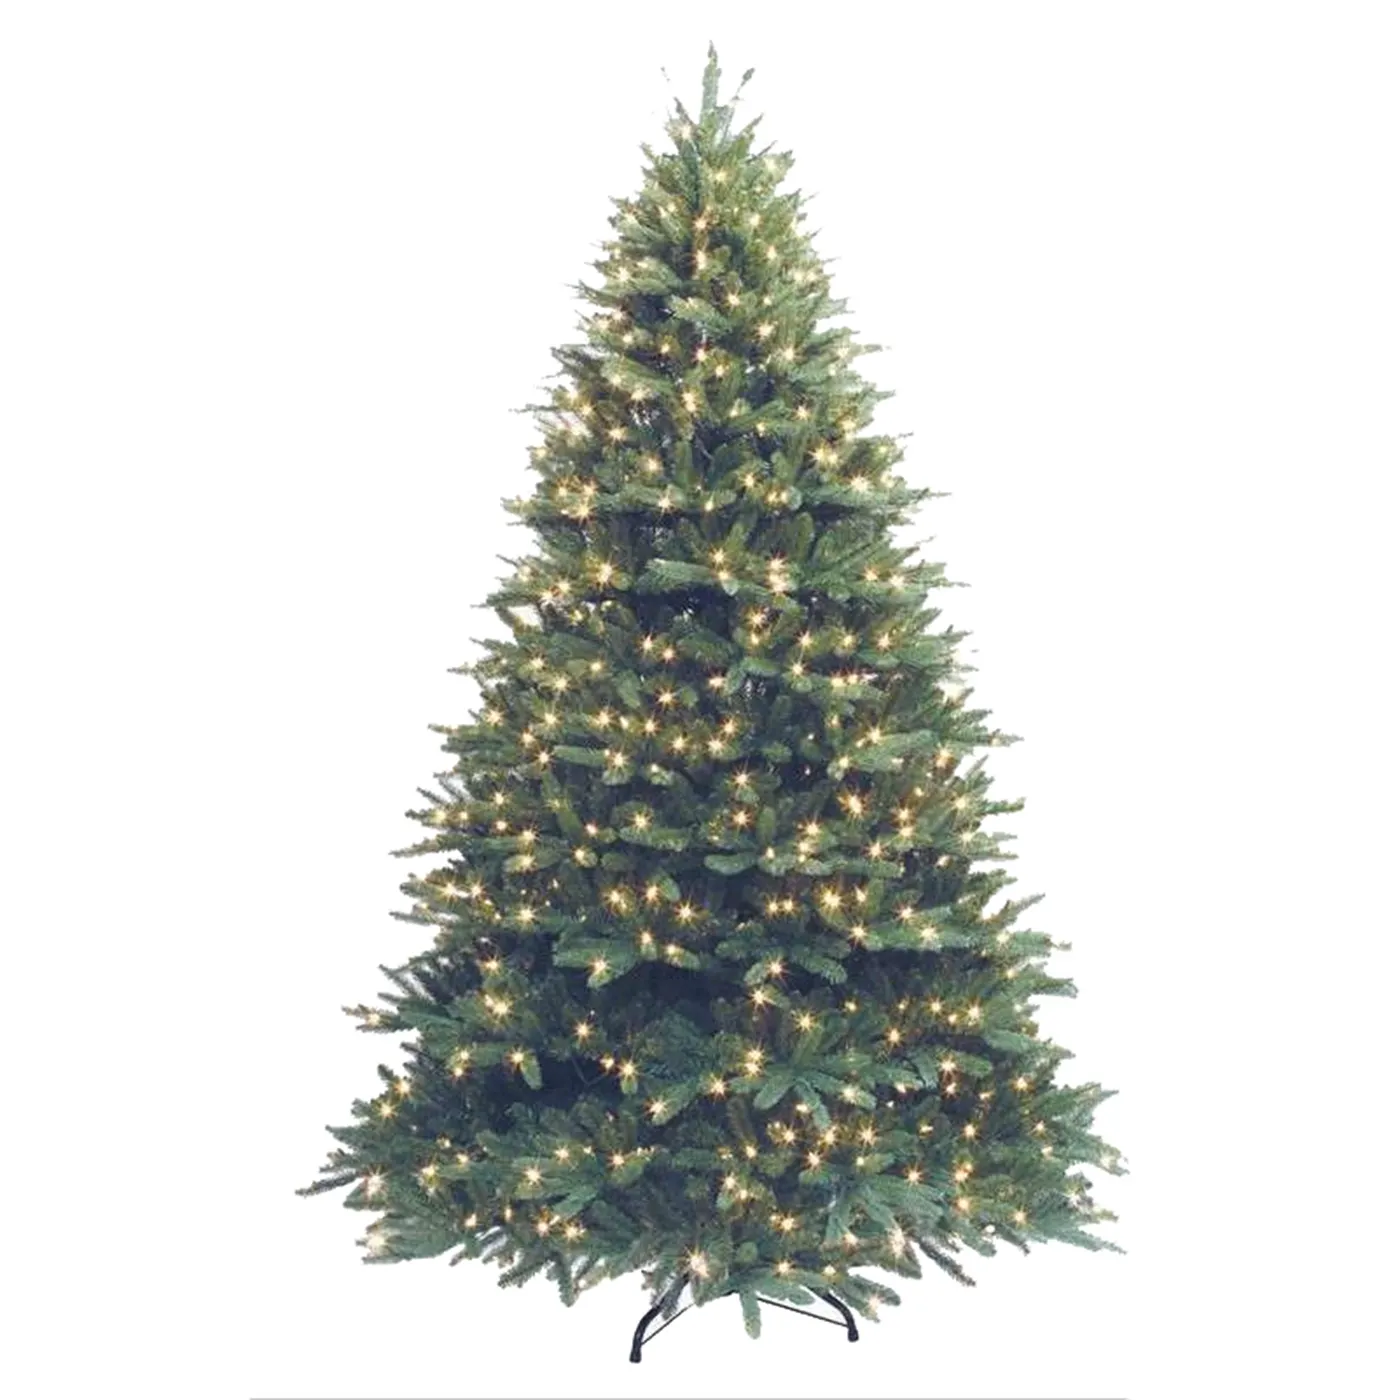 暖かい白いLEDライトが付いている事前に照らされた7フィートの人工クリスマスツリー